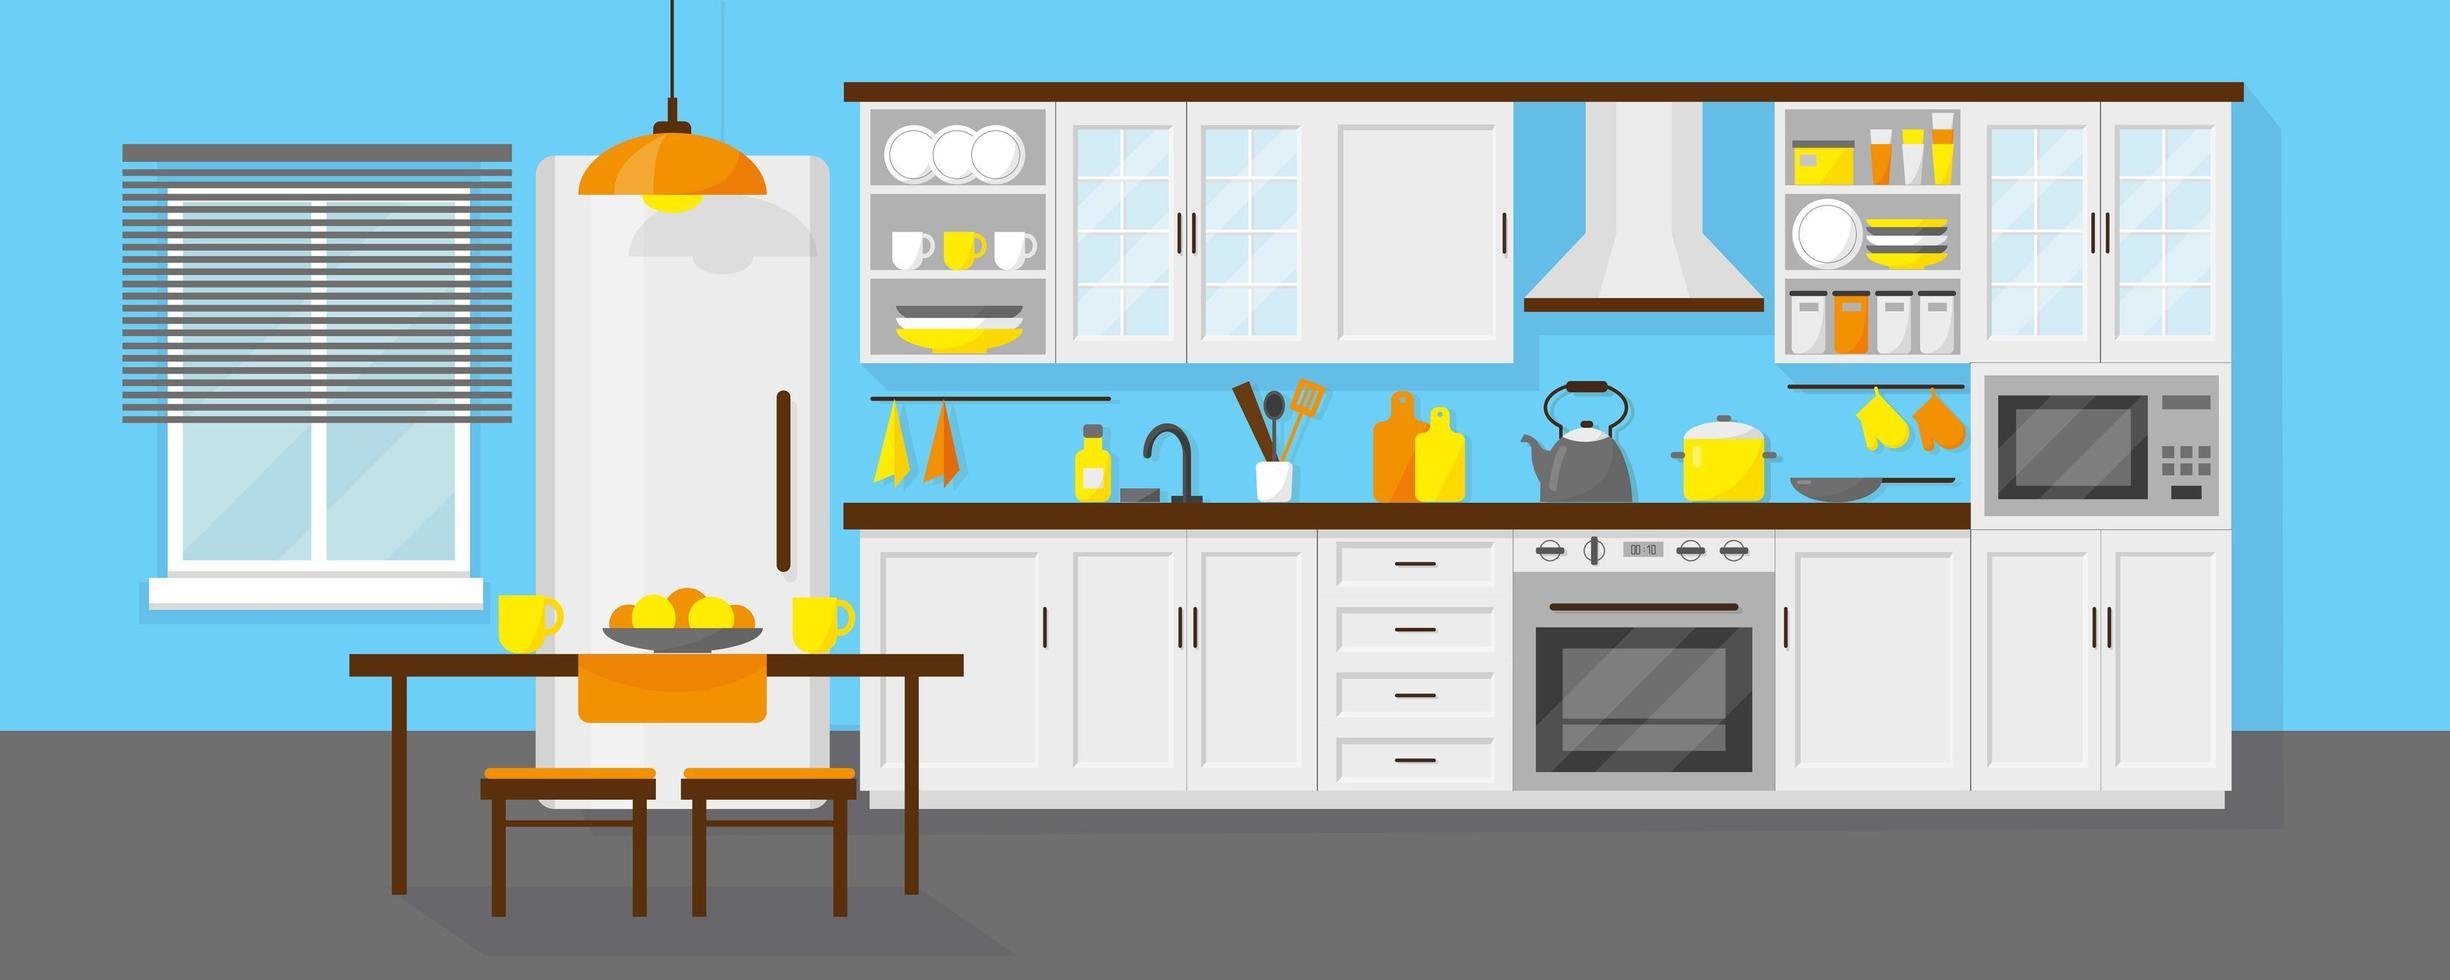 keukeninterieur met meubels en koelkast vector